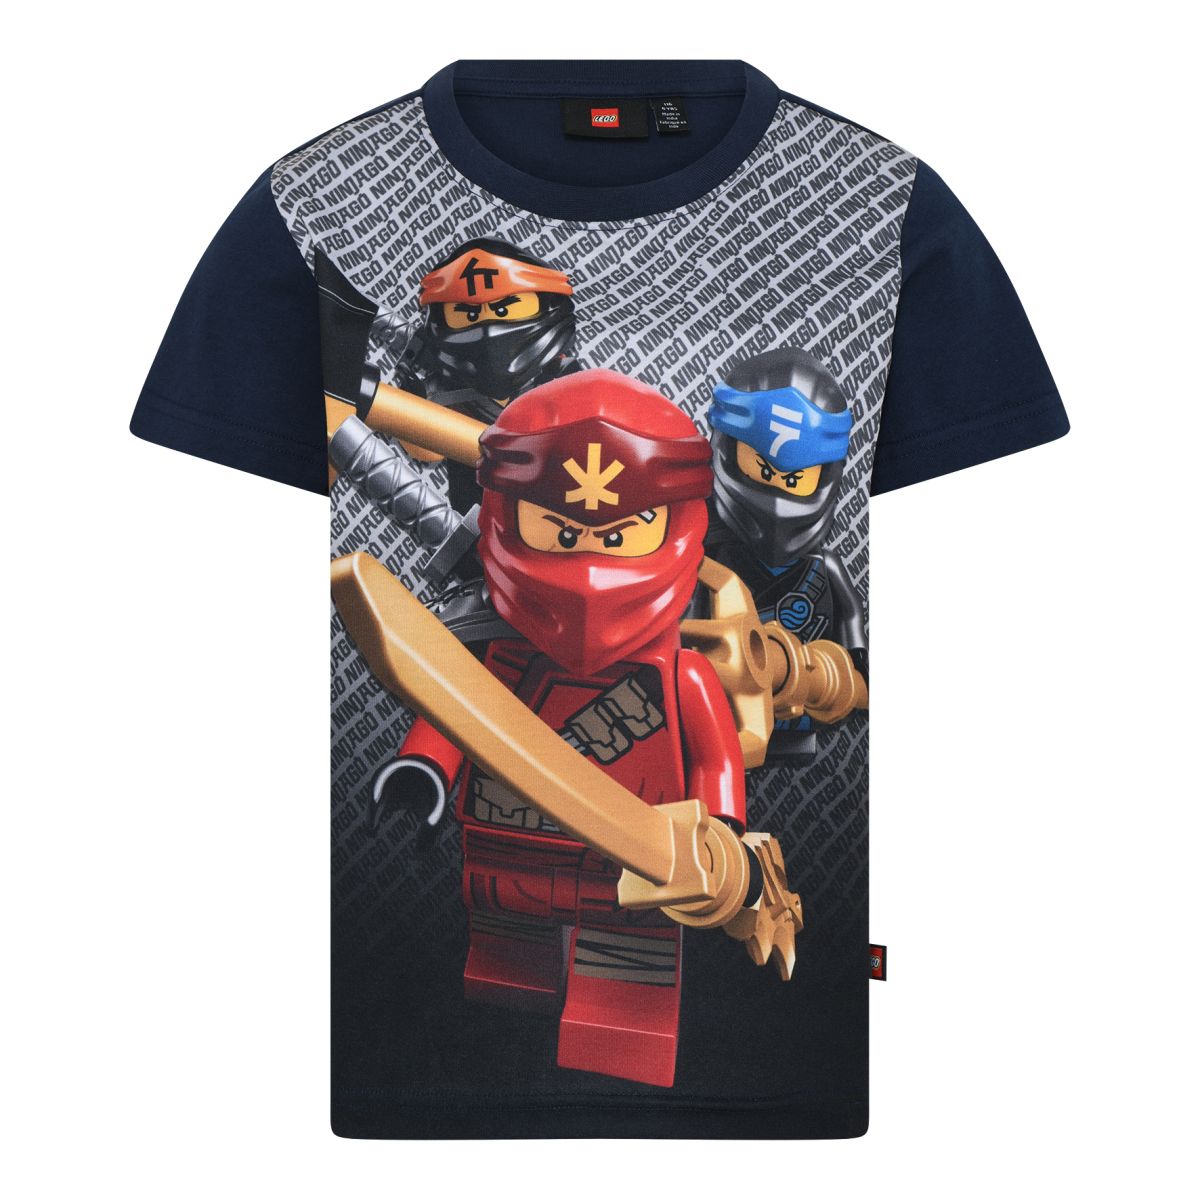 Lego - navy - Ninjago - T-Shirt, Mærker dark Wear IsaDisaKids